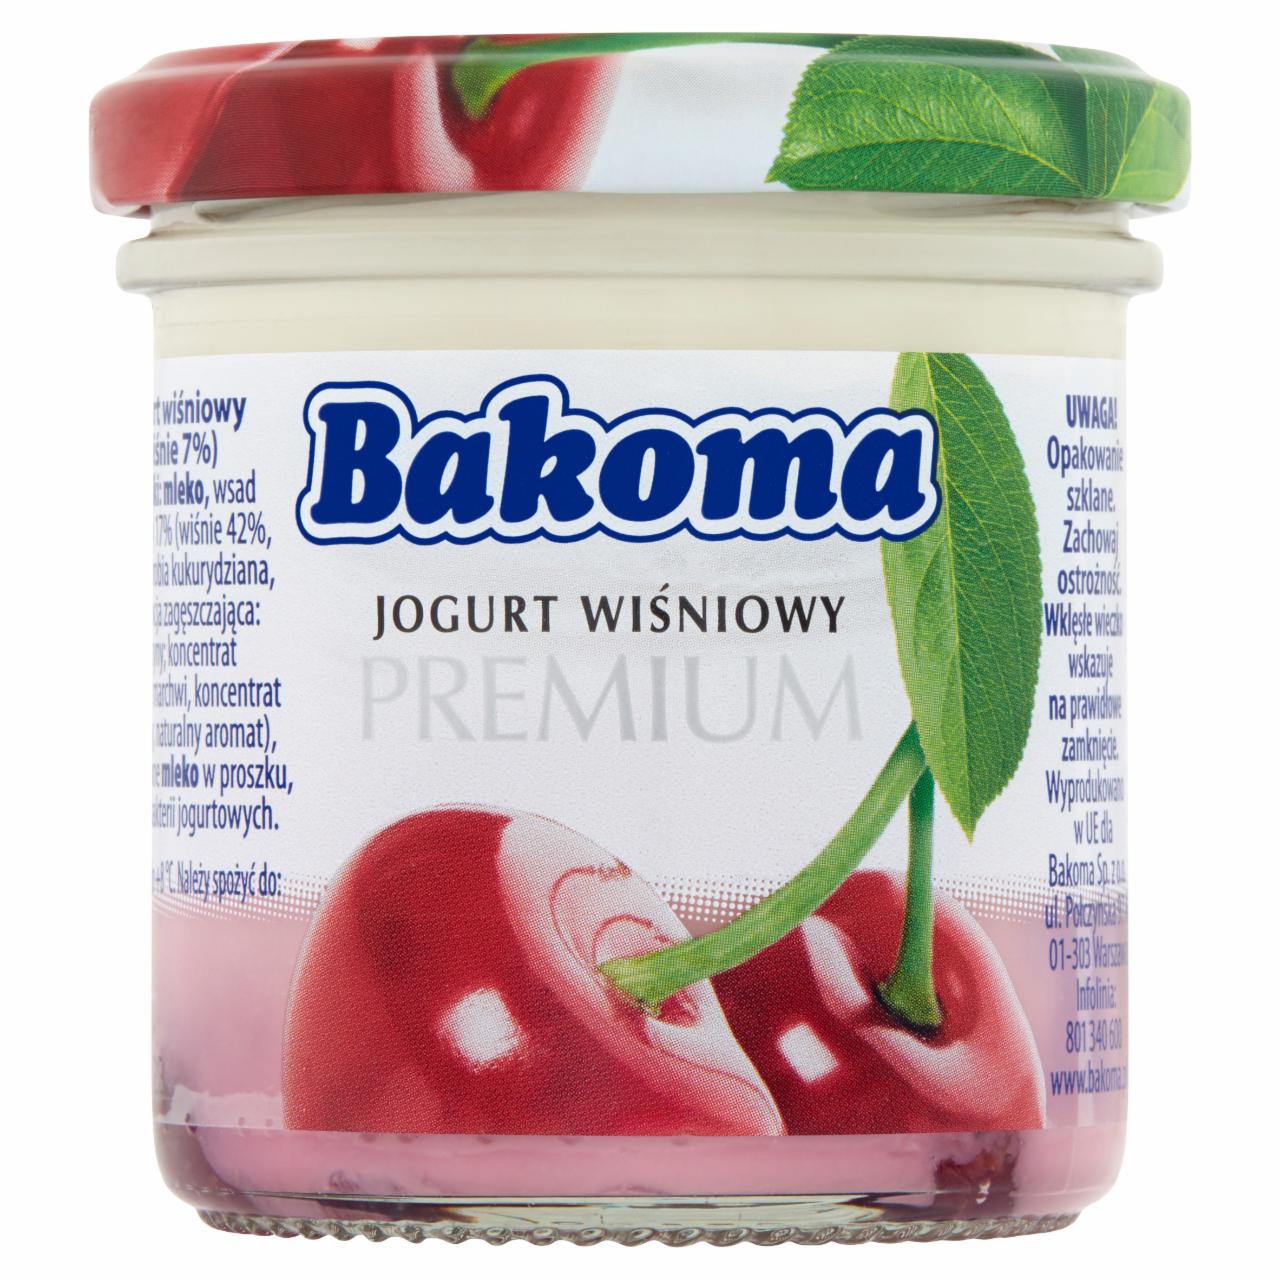 Zdjęcia - Bakoma Premium Jogurt wiśniowy 150 g